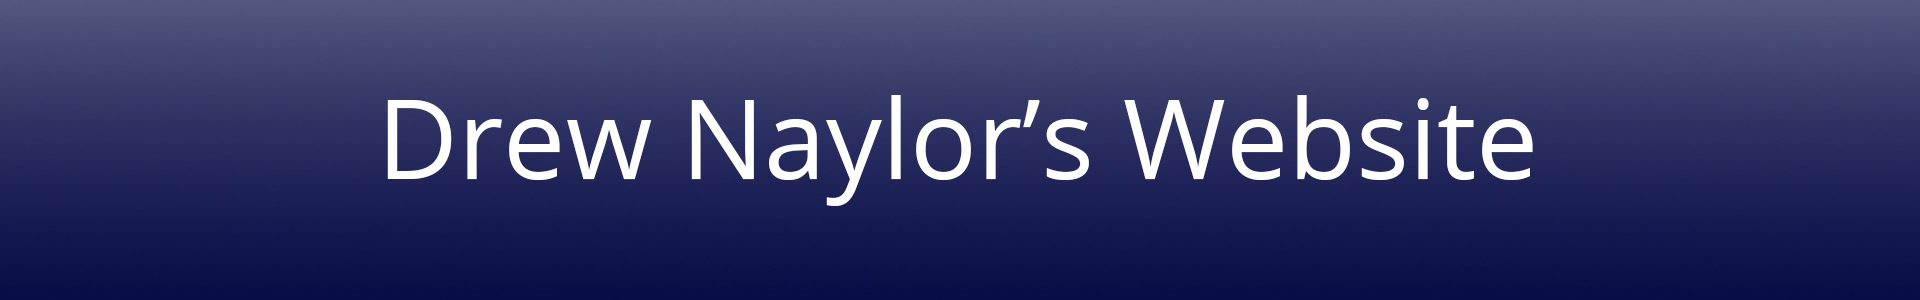 Drew Naylor's Website banner image